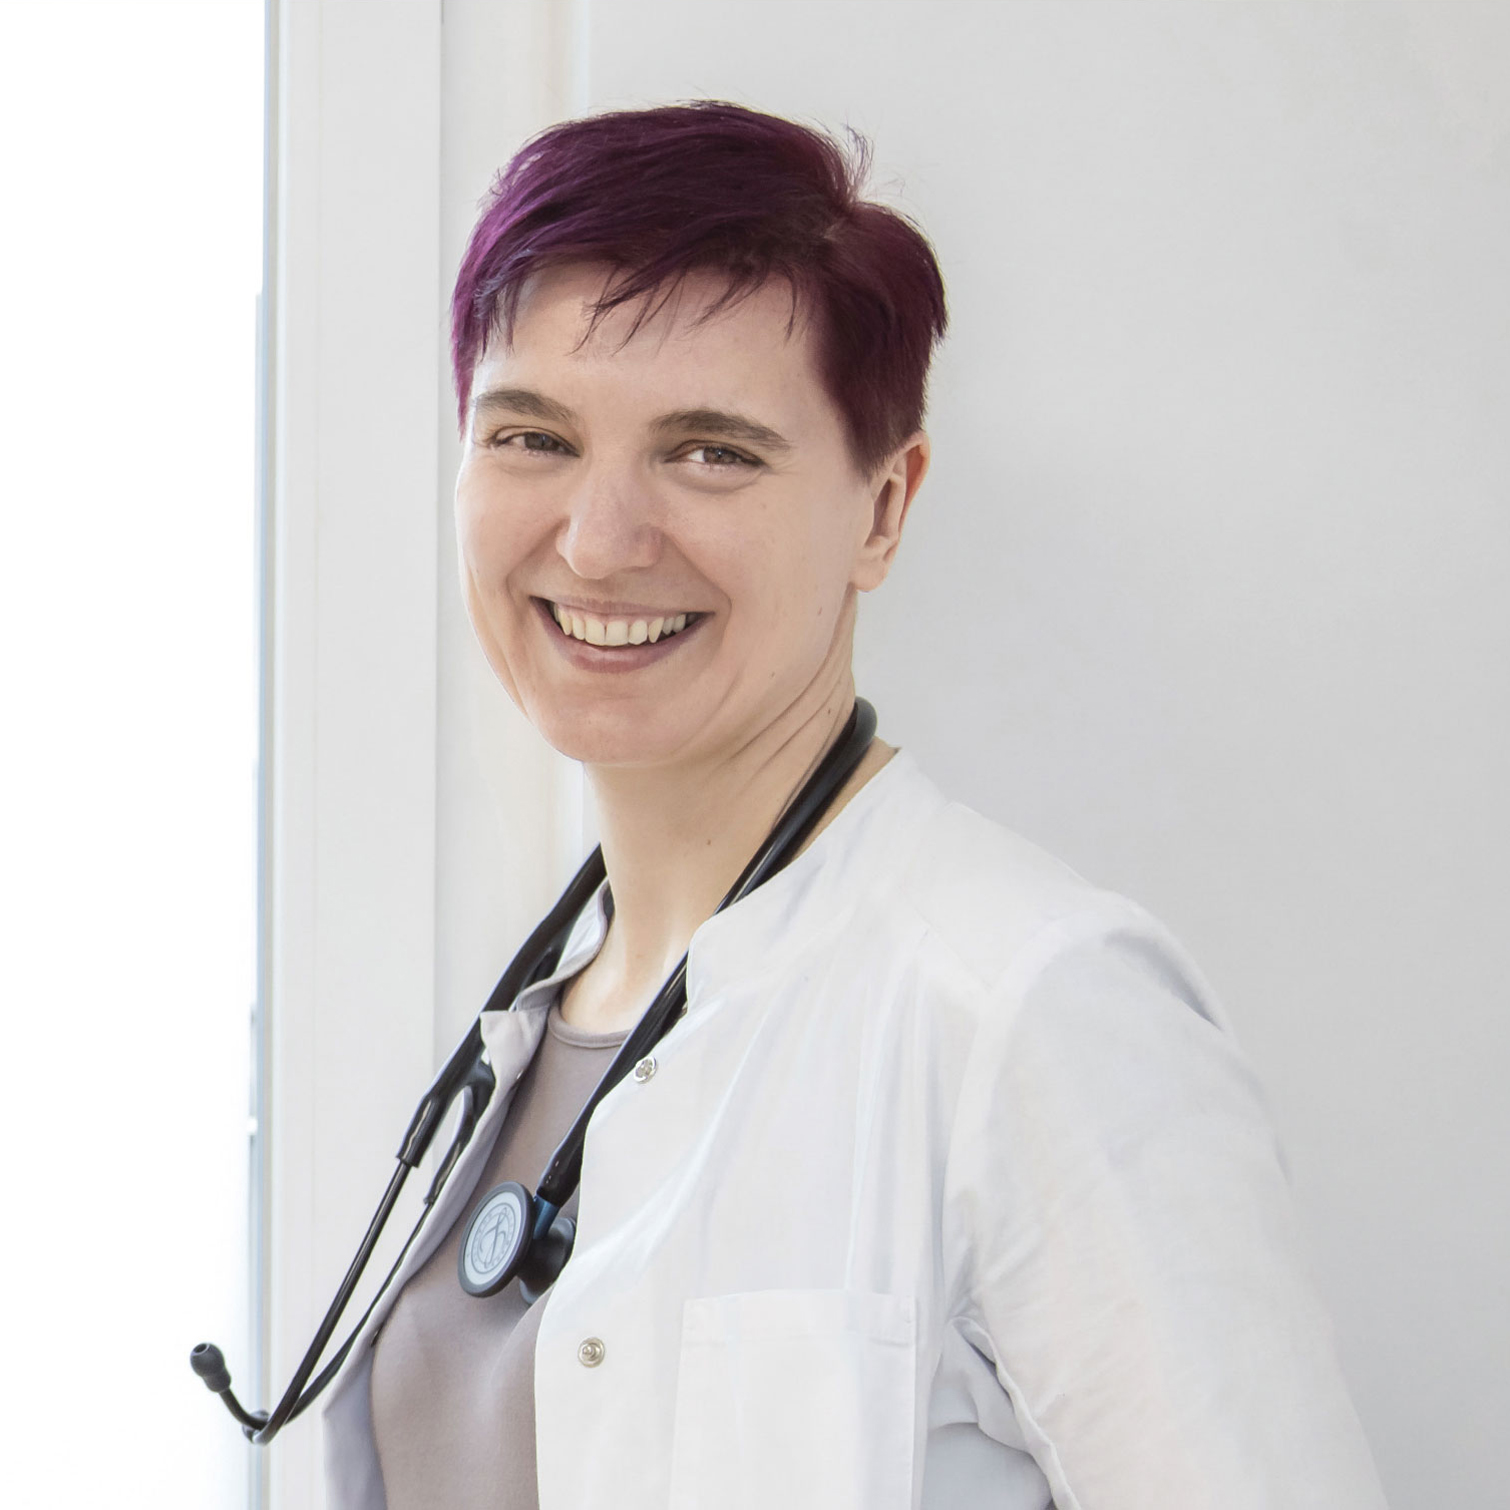 Dr. Dissauer, eine Dame mit rötlich gefärbten, kurzen Haaren, blickt im Arztkittel und Stethoskop um den Hals von der Seite lächelnd in die Kamera